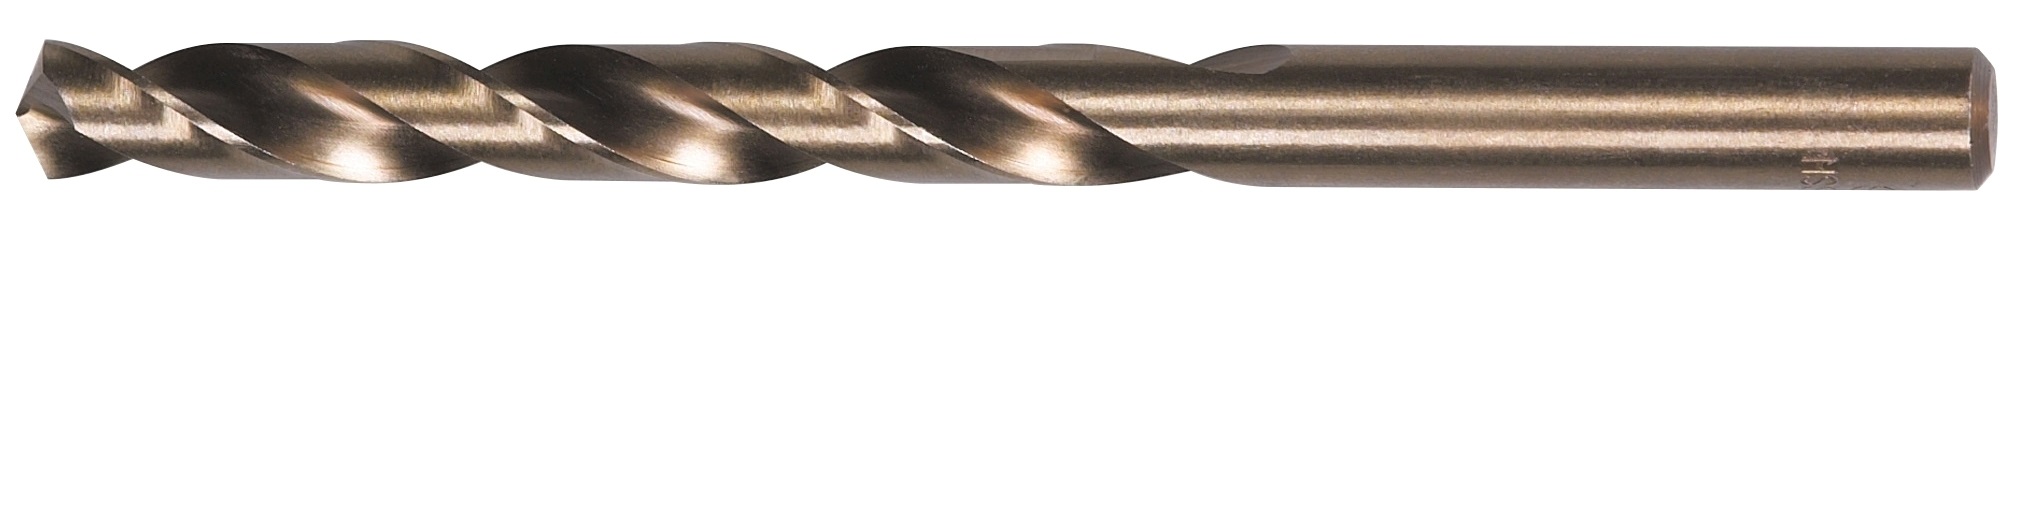 11,9mm HSS Kobalt Metallbohrer Spiralbohrer Gerader Schaft Spirale Werkzeug 